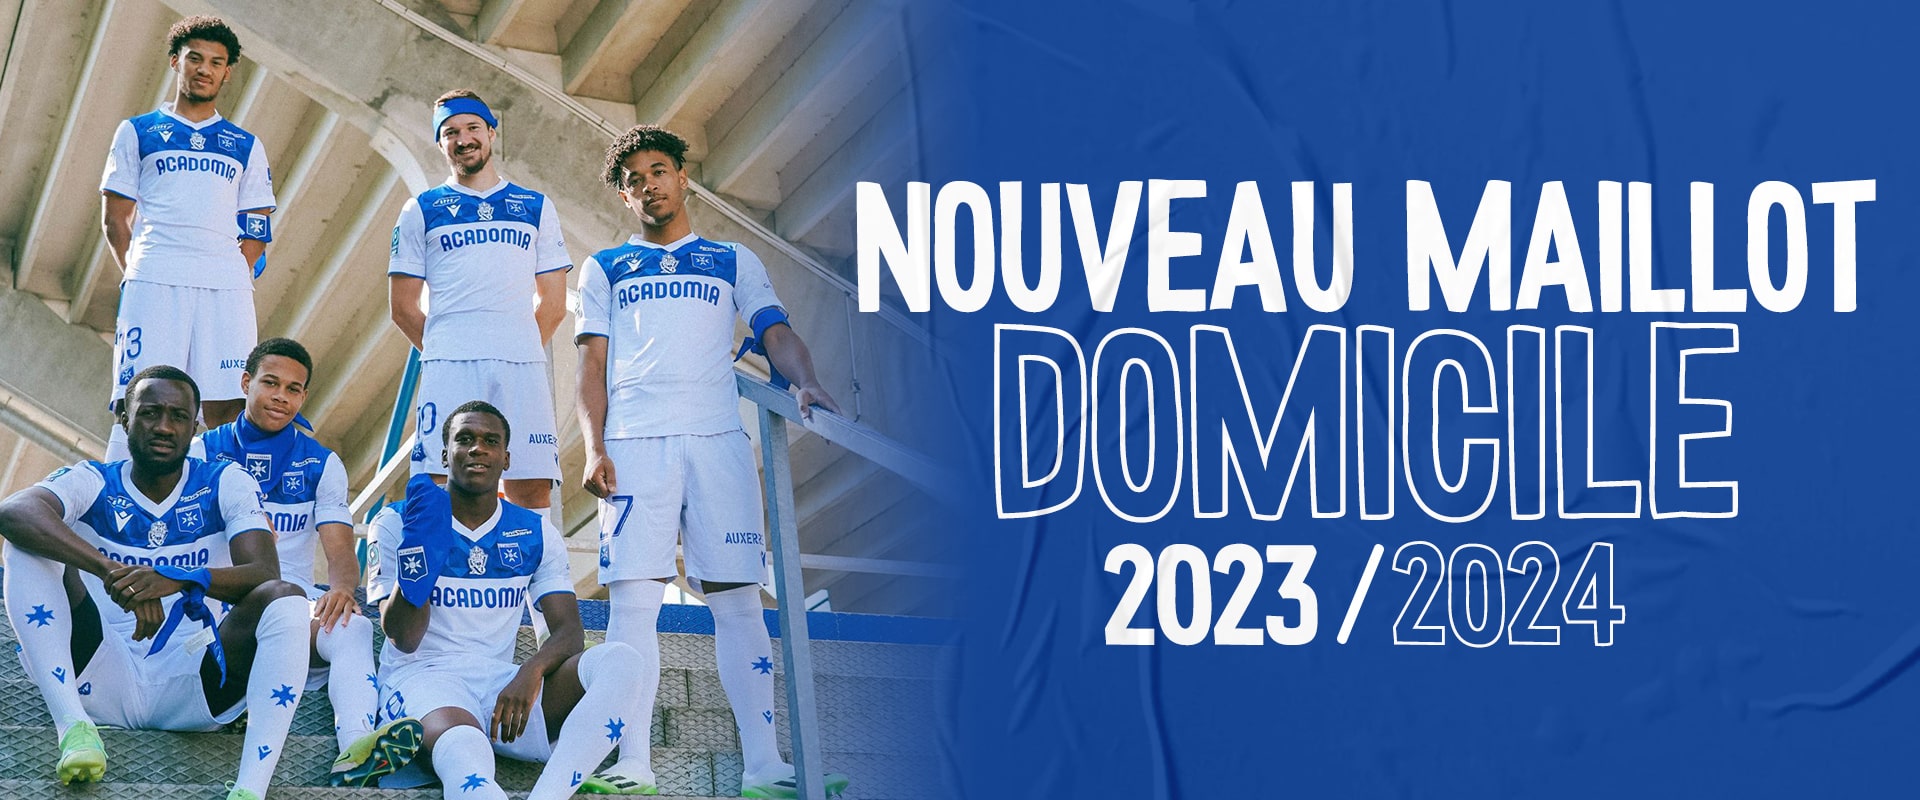 Chaussettes domicile junior LOSC 2022/2023 - SAS HALL